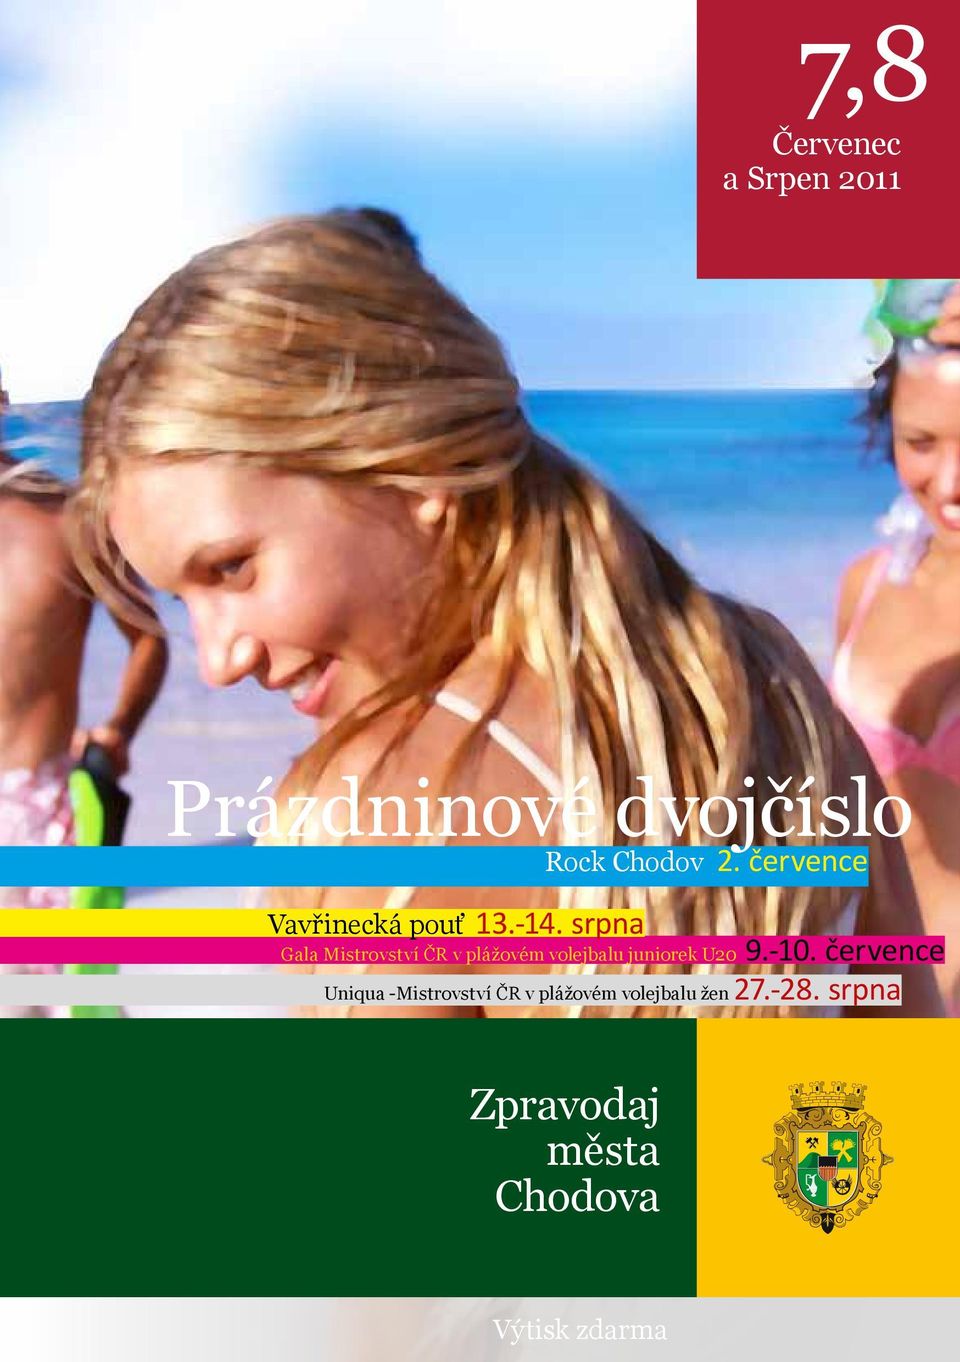 srpna Gala Mistrovství ČR v plážovém volejbalu juniorek U20 9.-10.